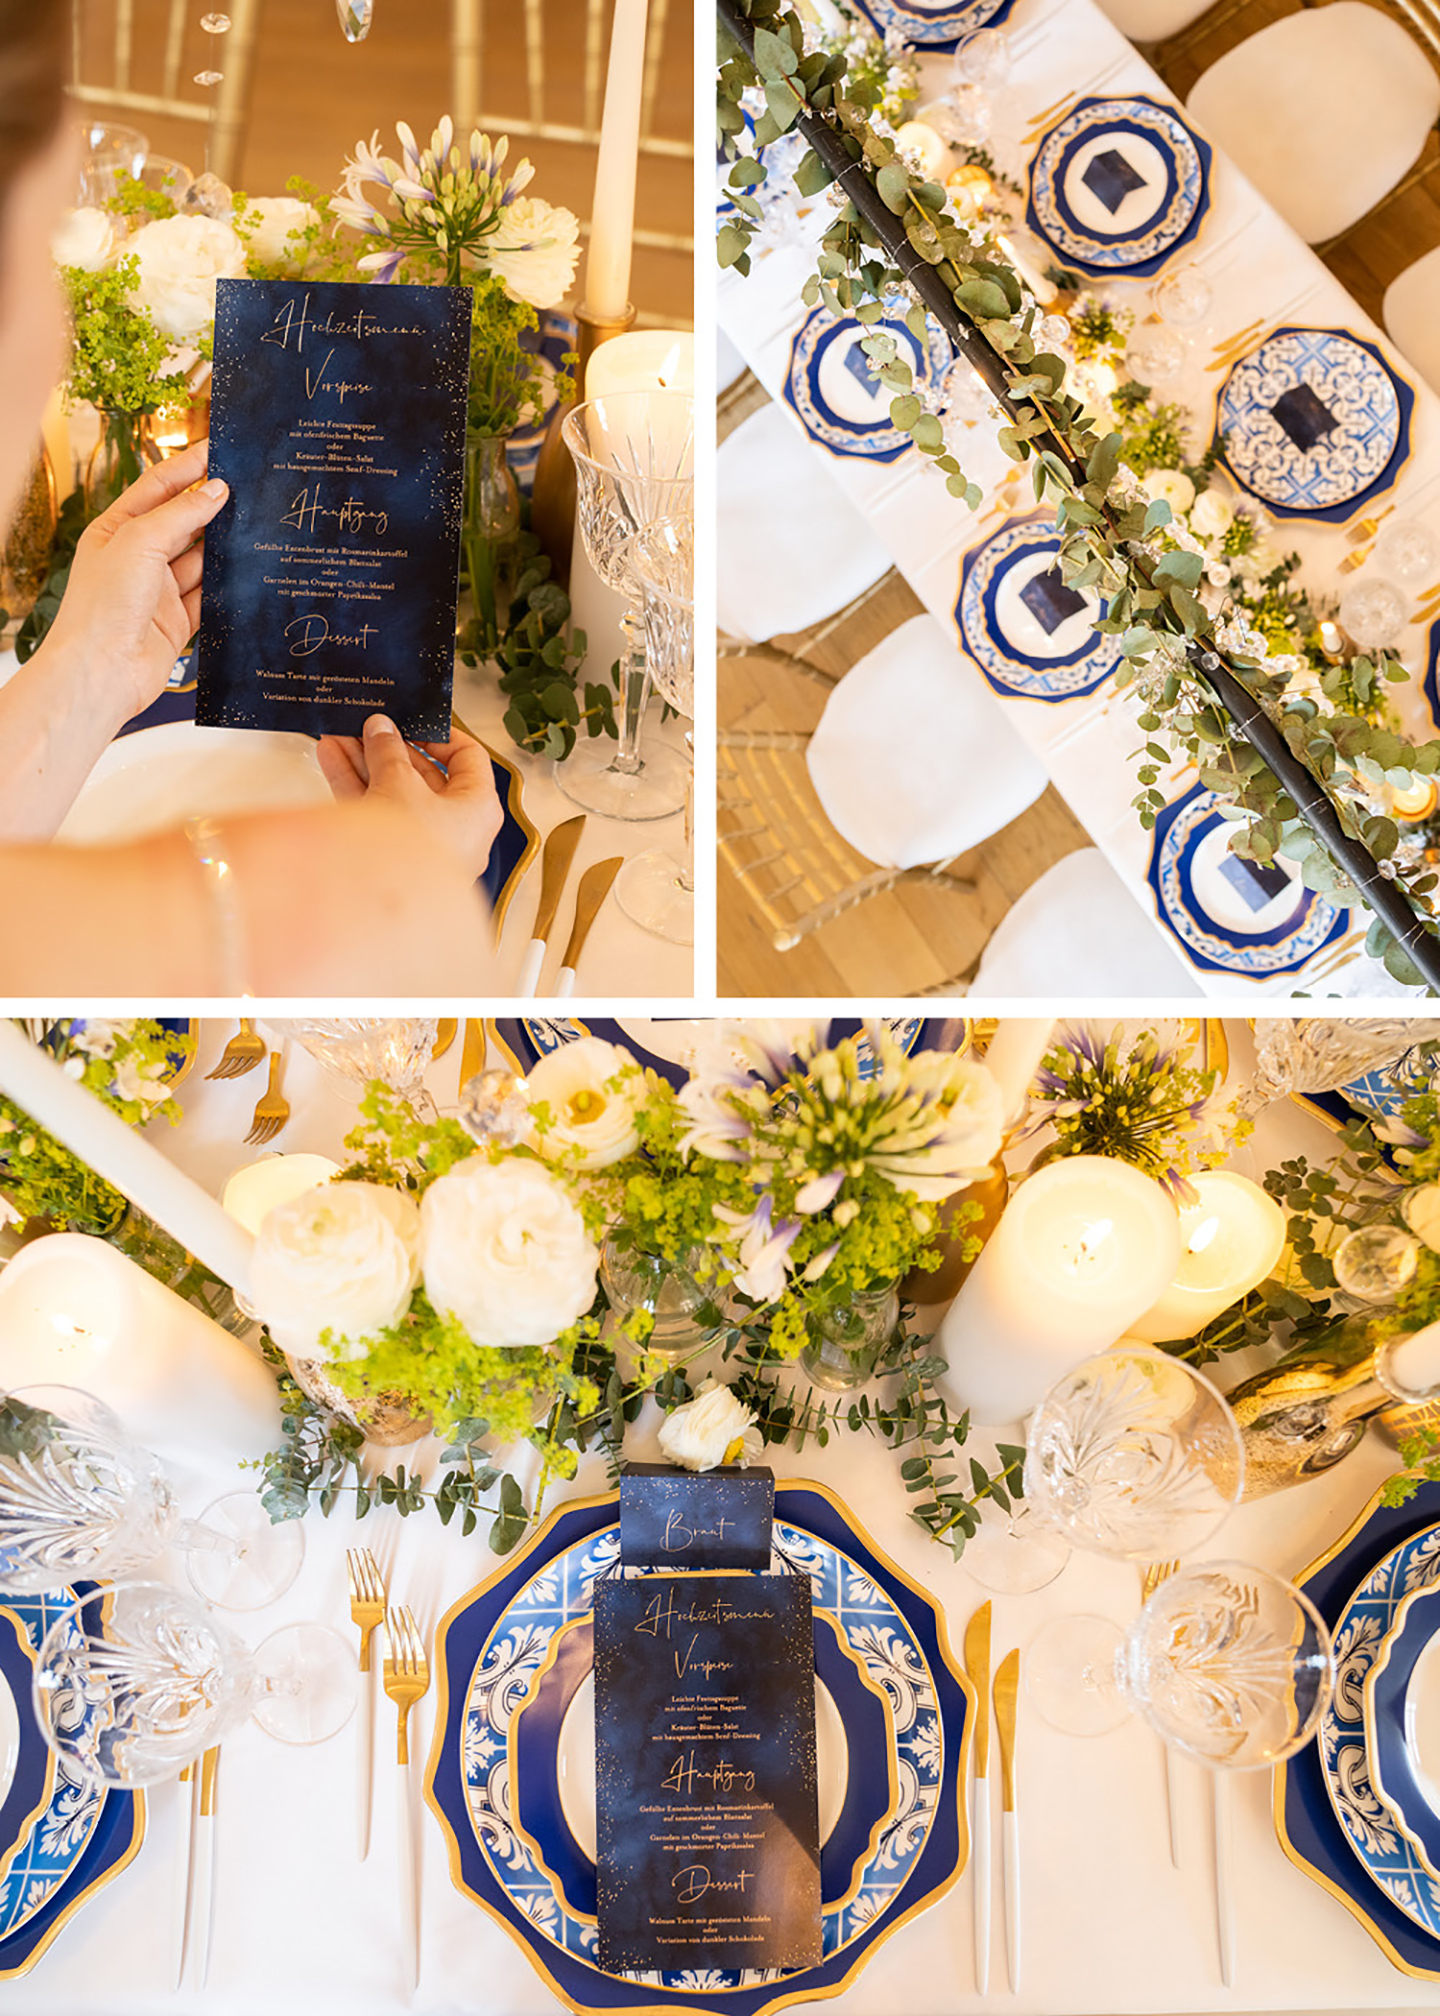 Klassisch angerichtete Hochzeitstafel in unterschiedlichen Blautönen, detailreiche Teller mit Muster, Deko in grün und Papeterie in Dunkelblau, passend zur Hochzeitsdeko, ist zu sehen. 